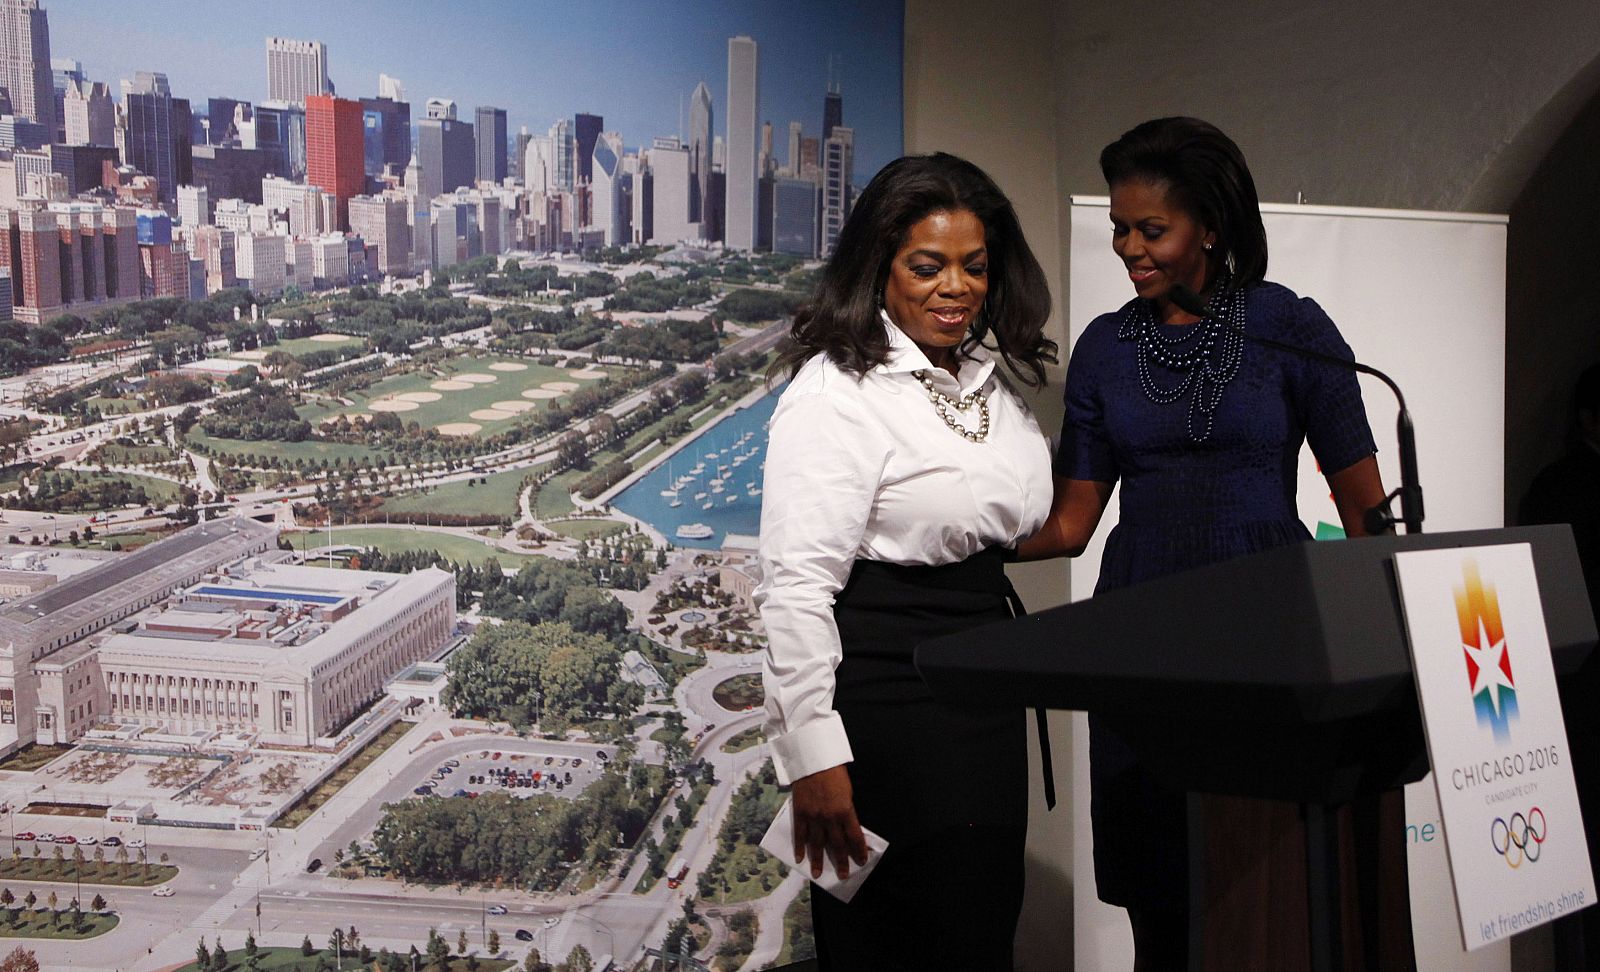 La presentadora de TV Oprah Winfrey presenta a Michelle Obama durante una cena de apoyo a Chicago